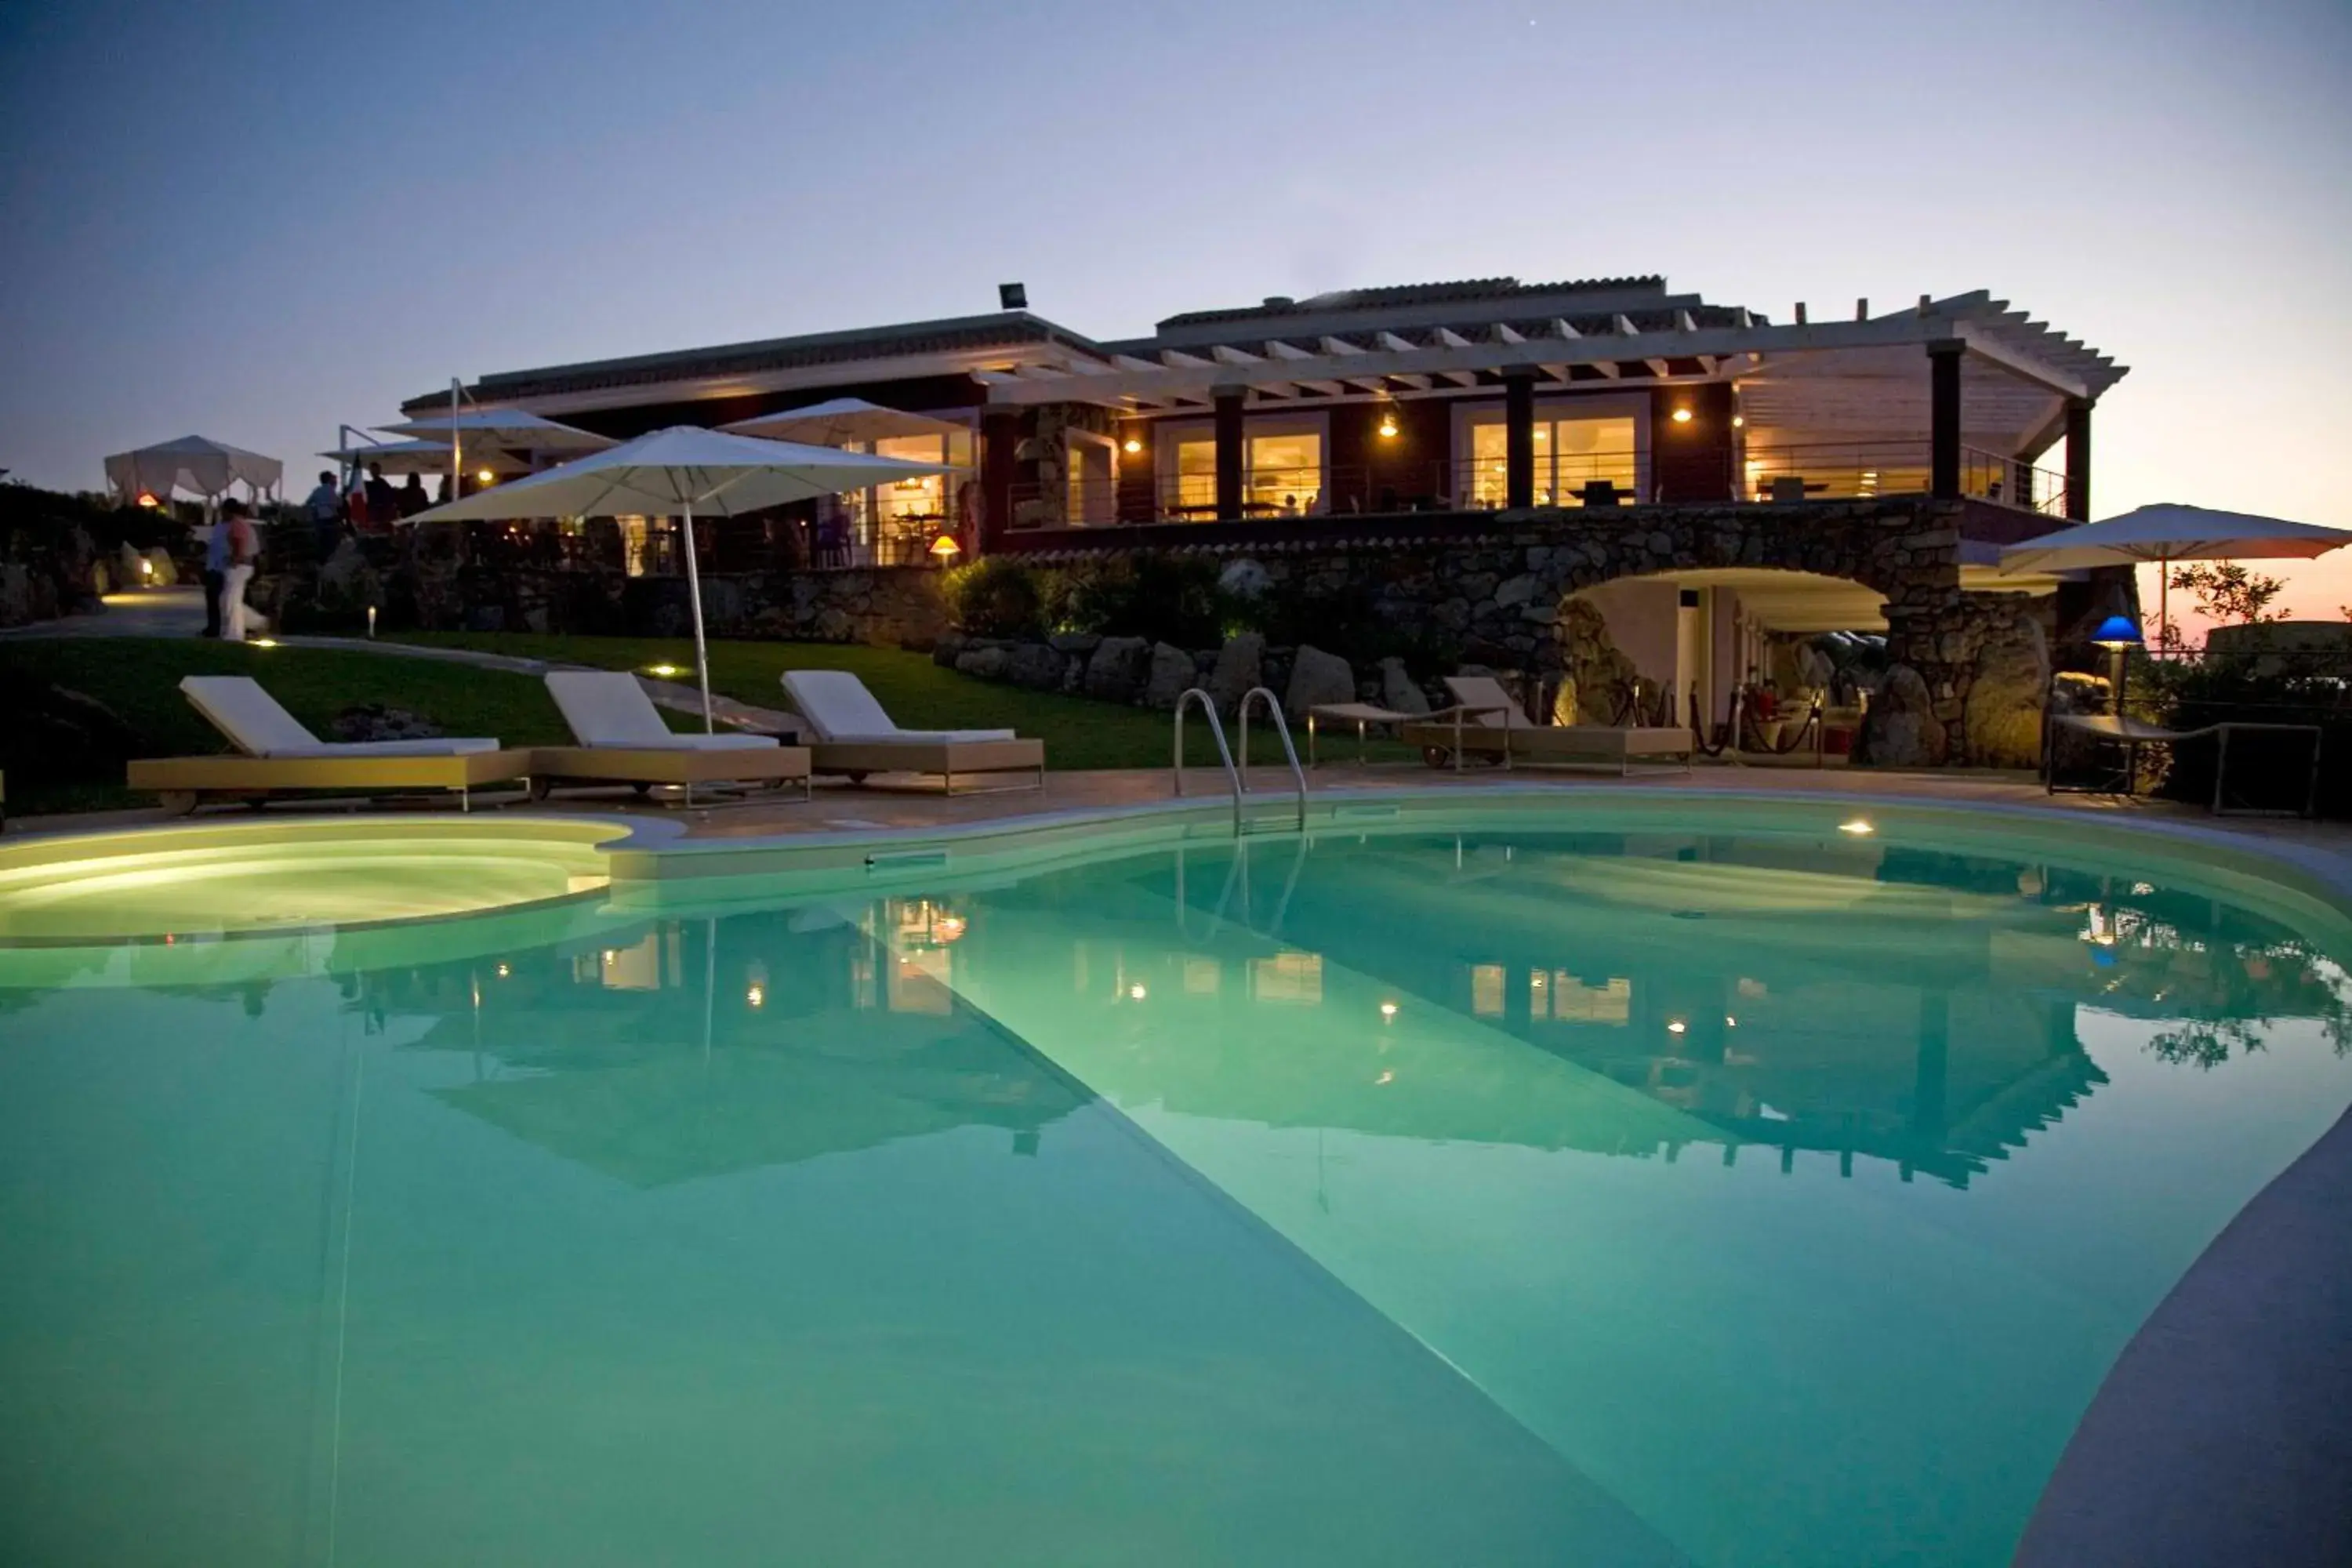 Swimming pool, Property Building in Bajaloglia Resort